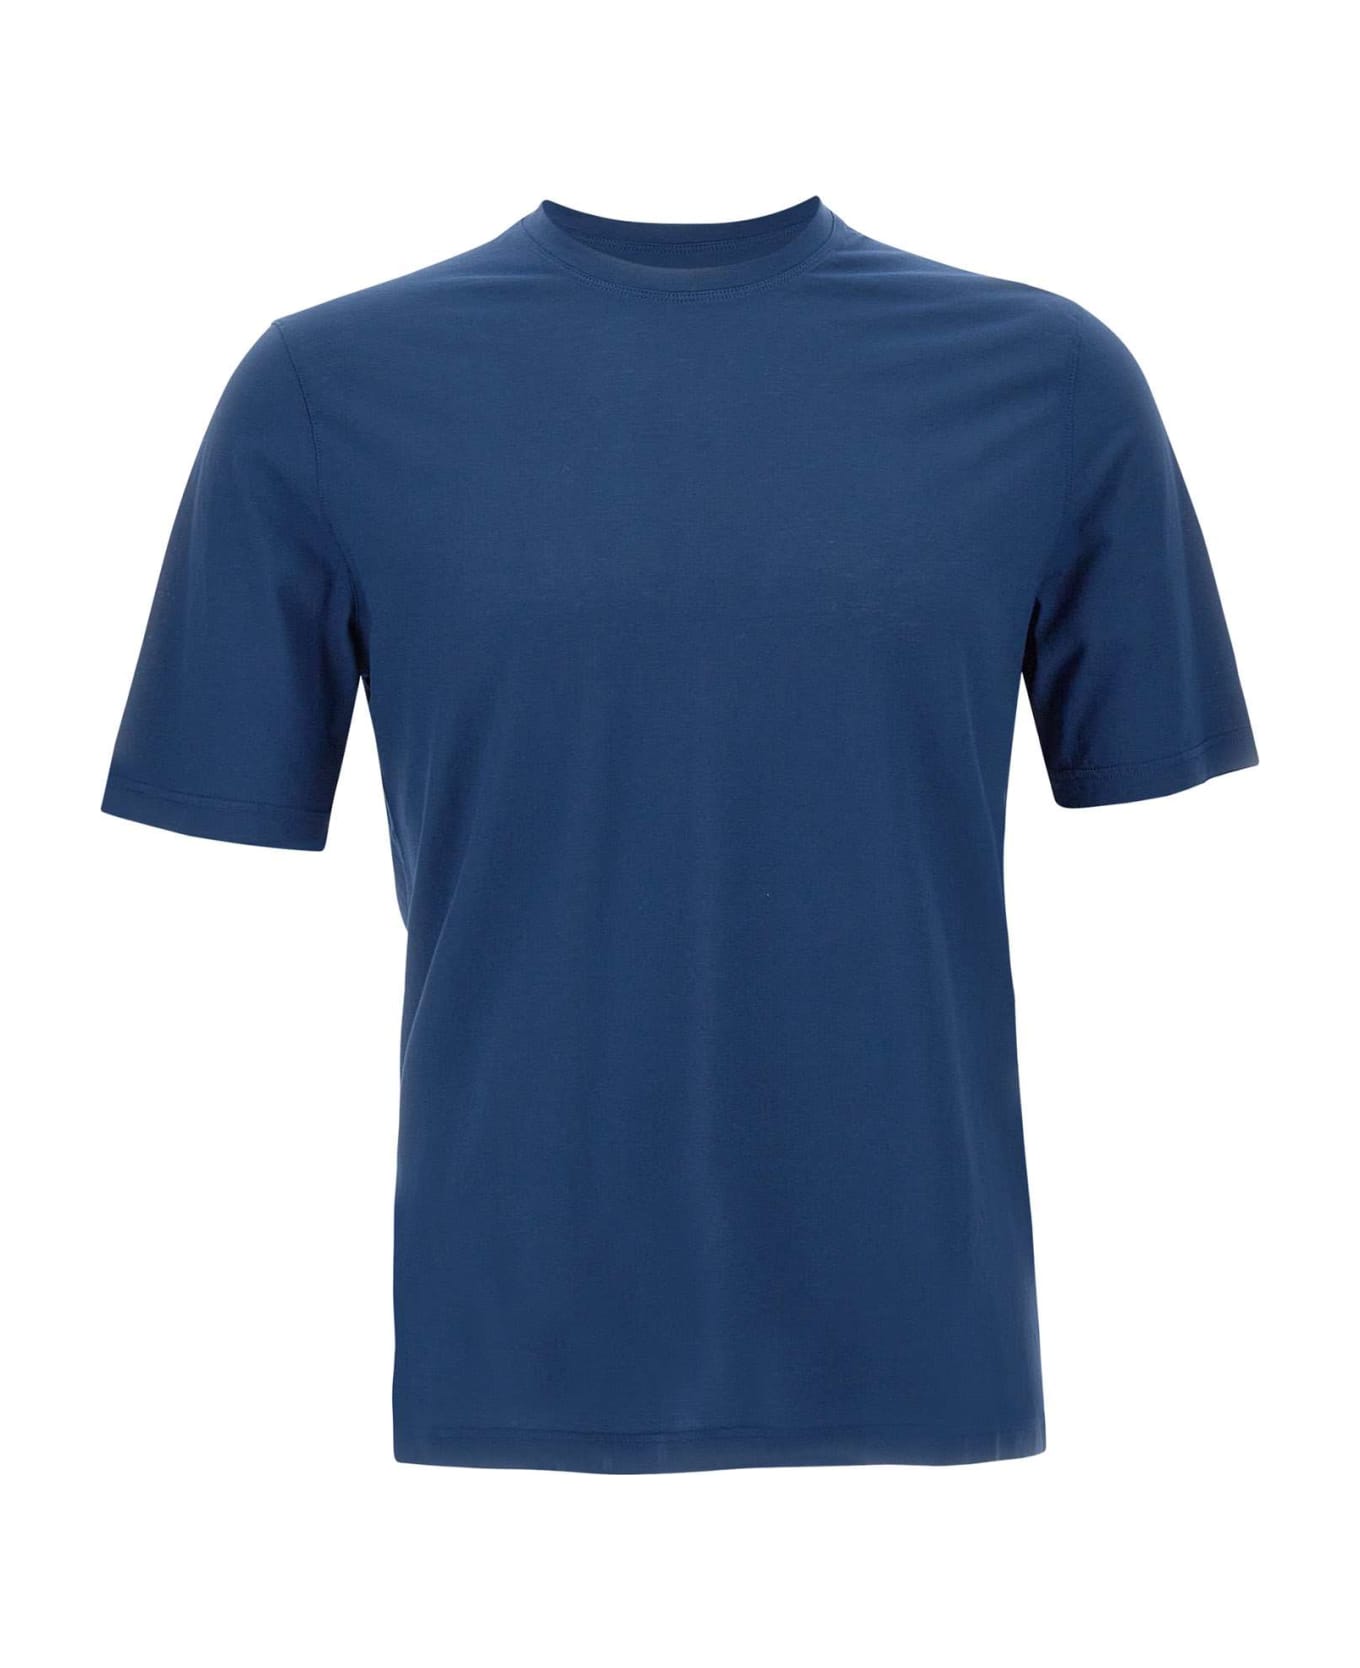 Filippo De Laurentiis Crêpe Cotton T-shirt - BLUE